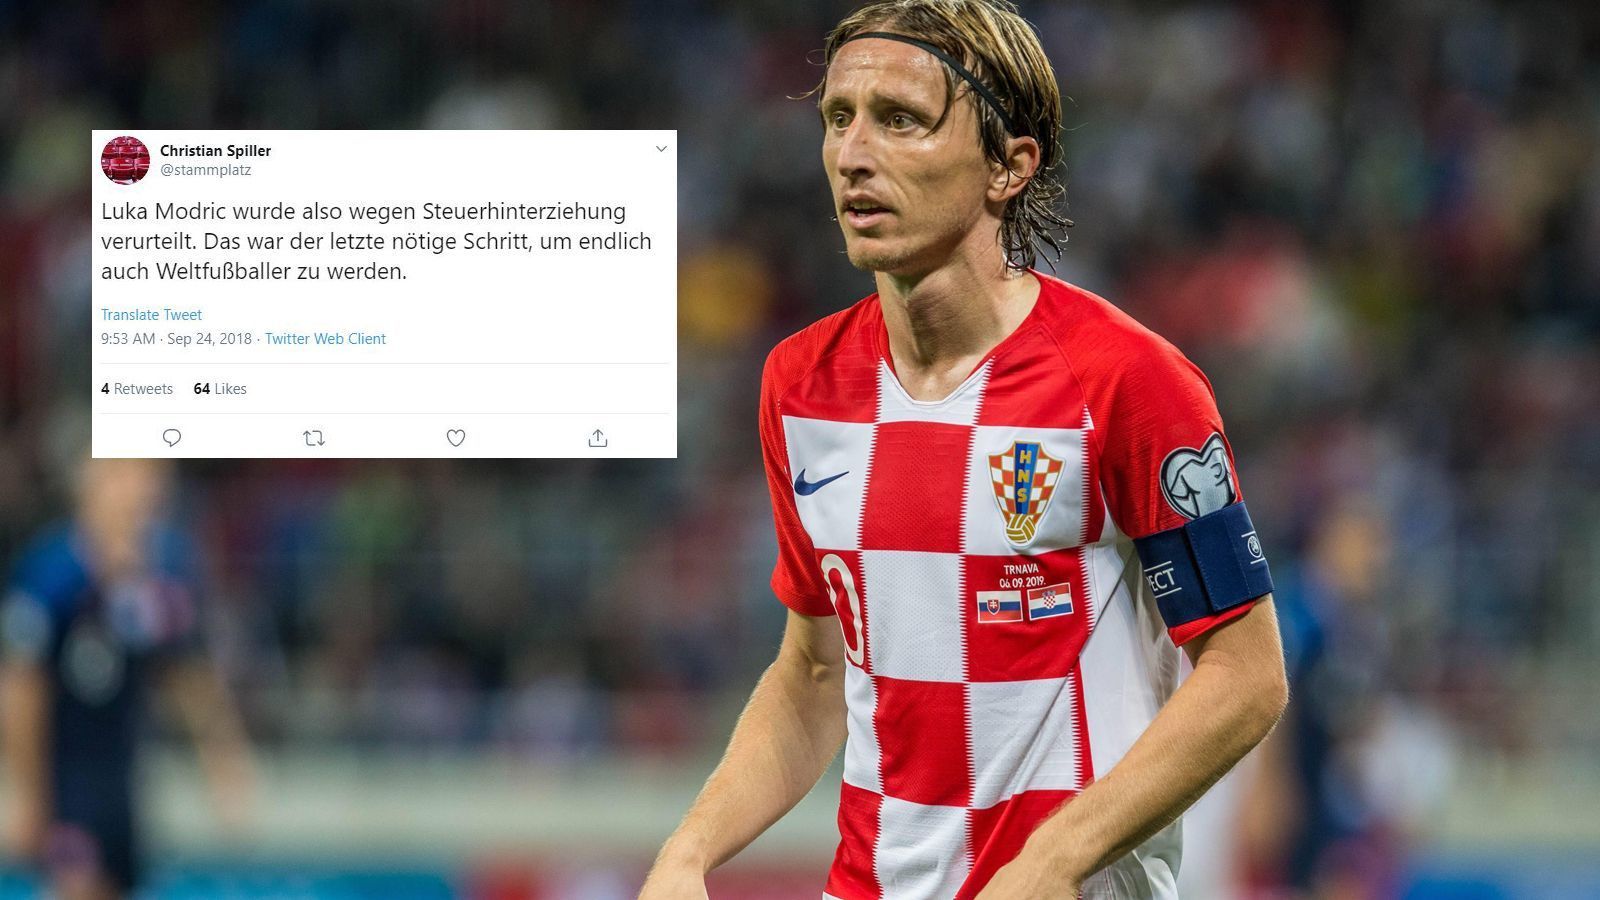 
                <strong>Christian Spiller (Journalist und Autor) </strong><br>
                "Luka Modric wurde also wegen Steuerhinterziehung verurteilt. Das war der letzte nötige Schritt, um endlich auch Weltfußballer zu werden." (Christian Spiller und die Auszeichnung Modric' mit dem Ballon d'Or folgte noch im selben Jahr via "Twitter")
              